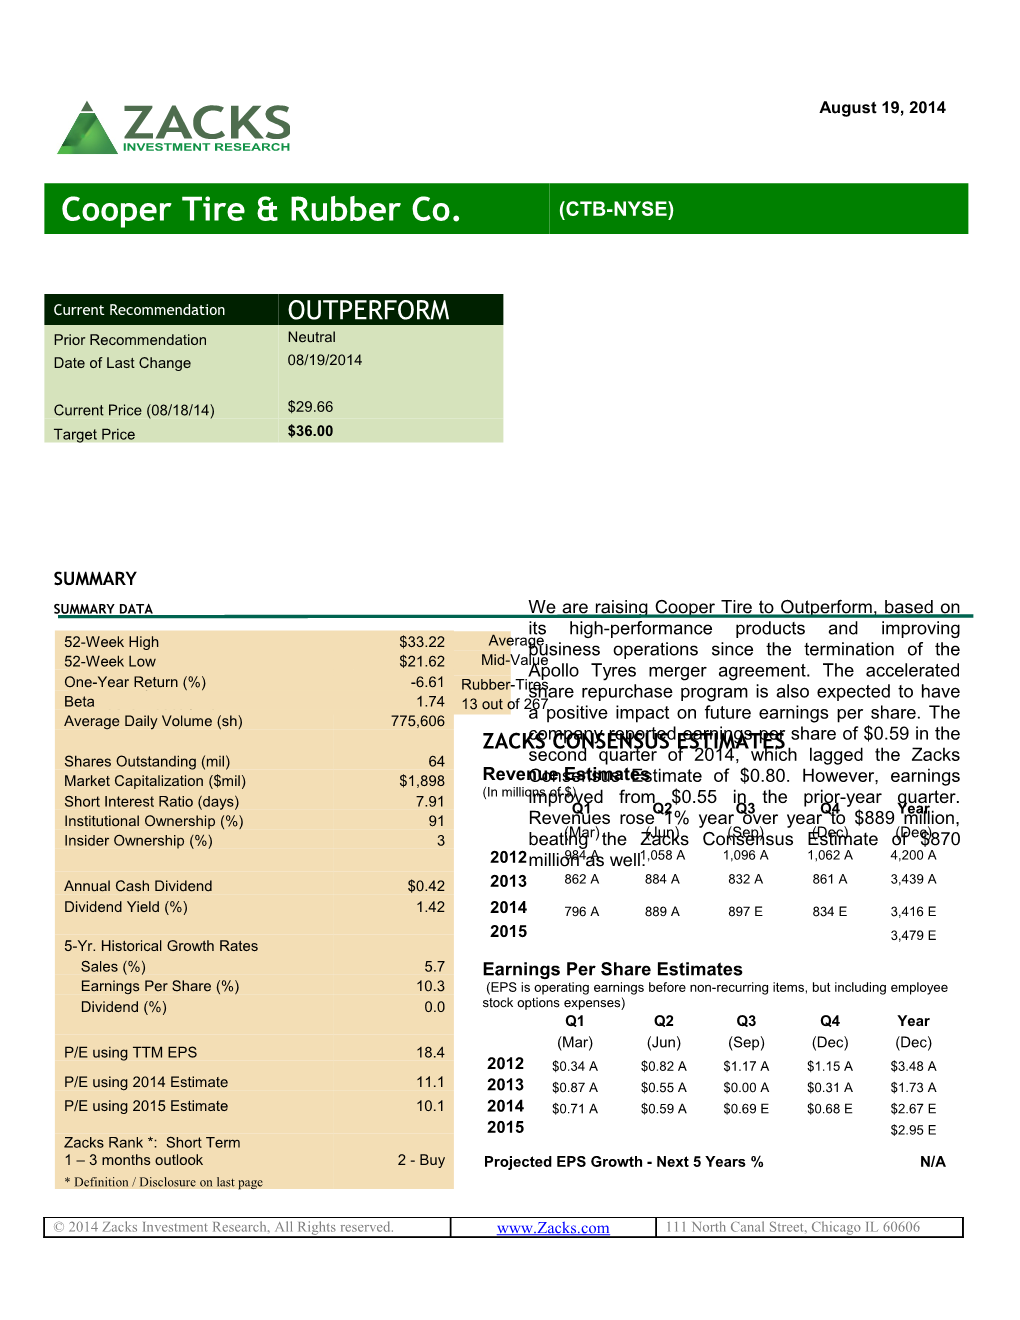 Cooper Tire Rubber Co